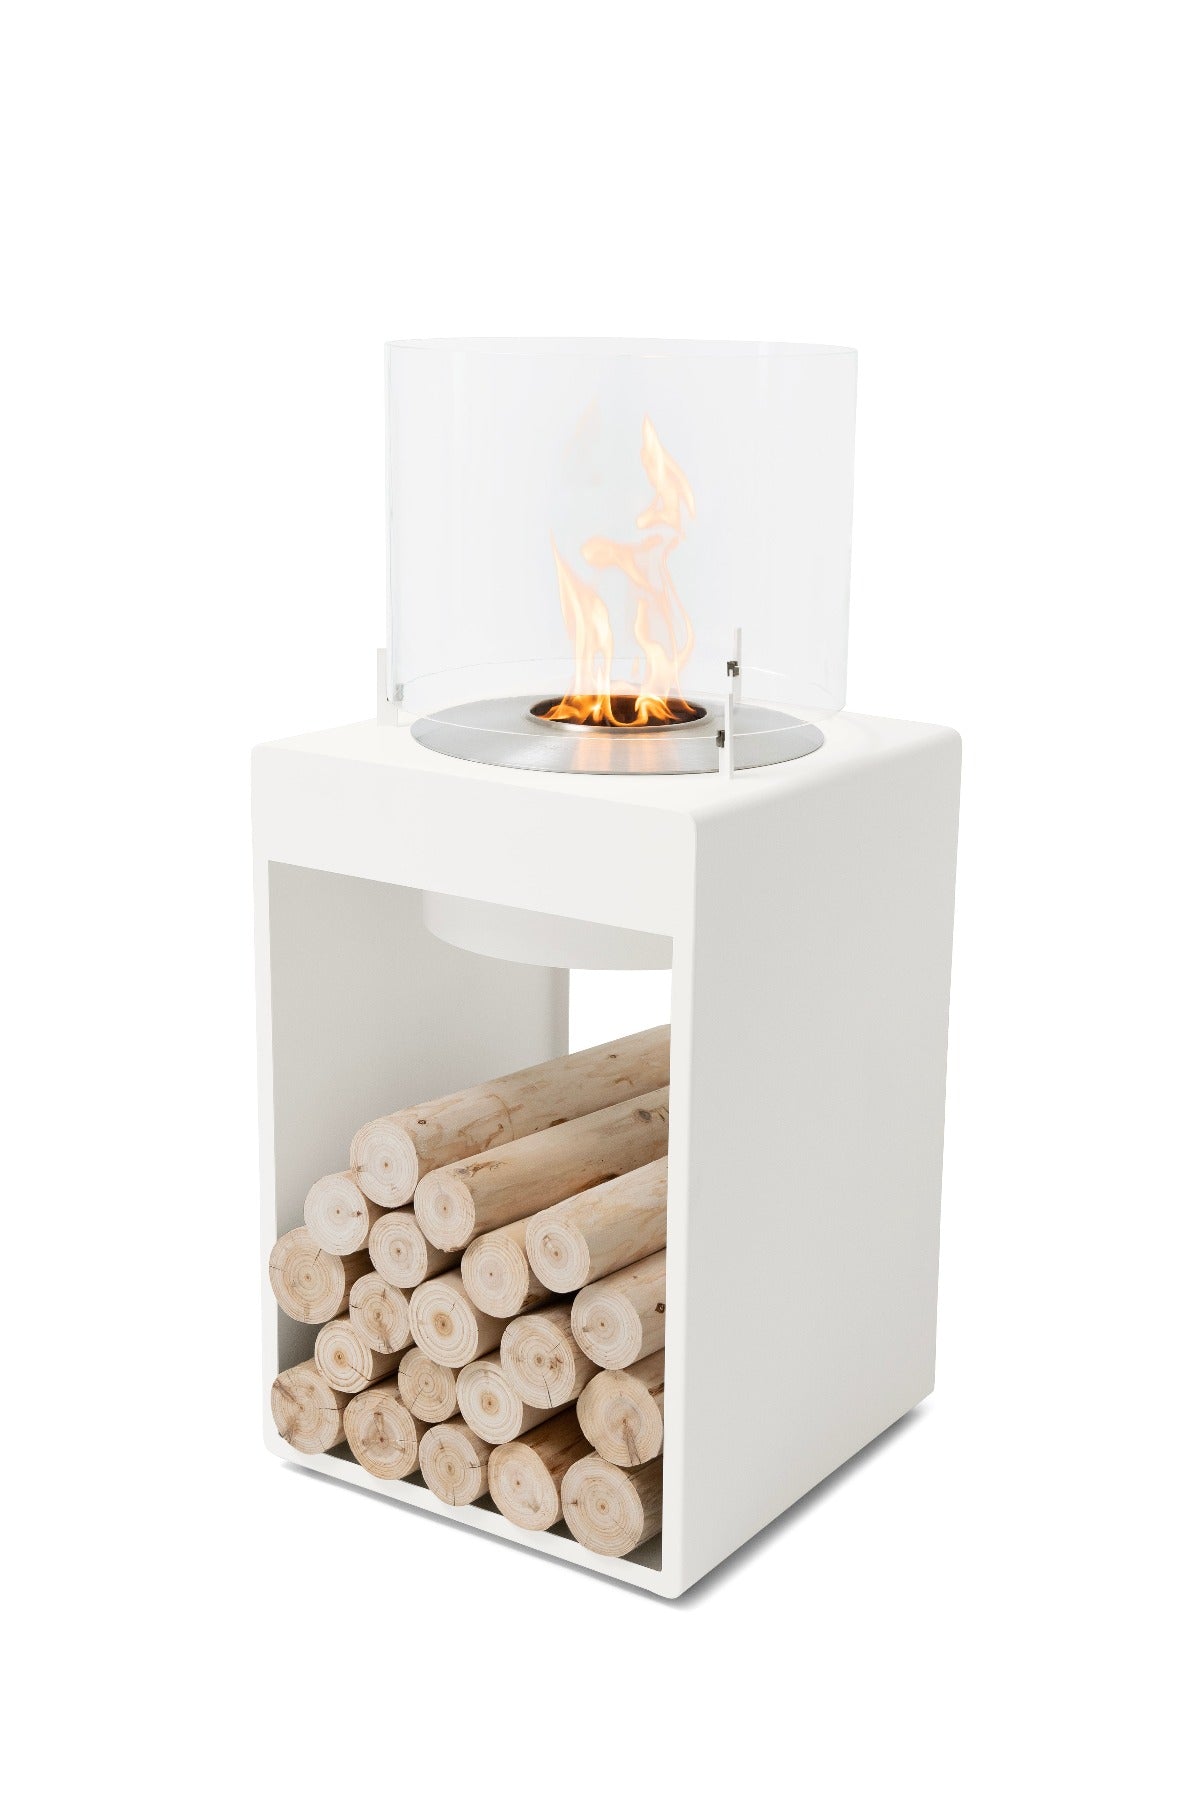 Ecosmart Fire Pop 8T Bioethanol Fireplace - Alfresco Heat